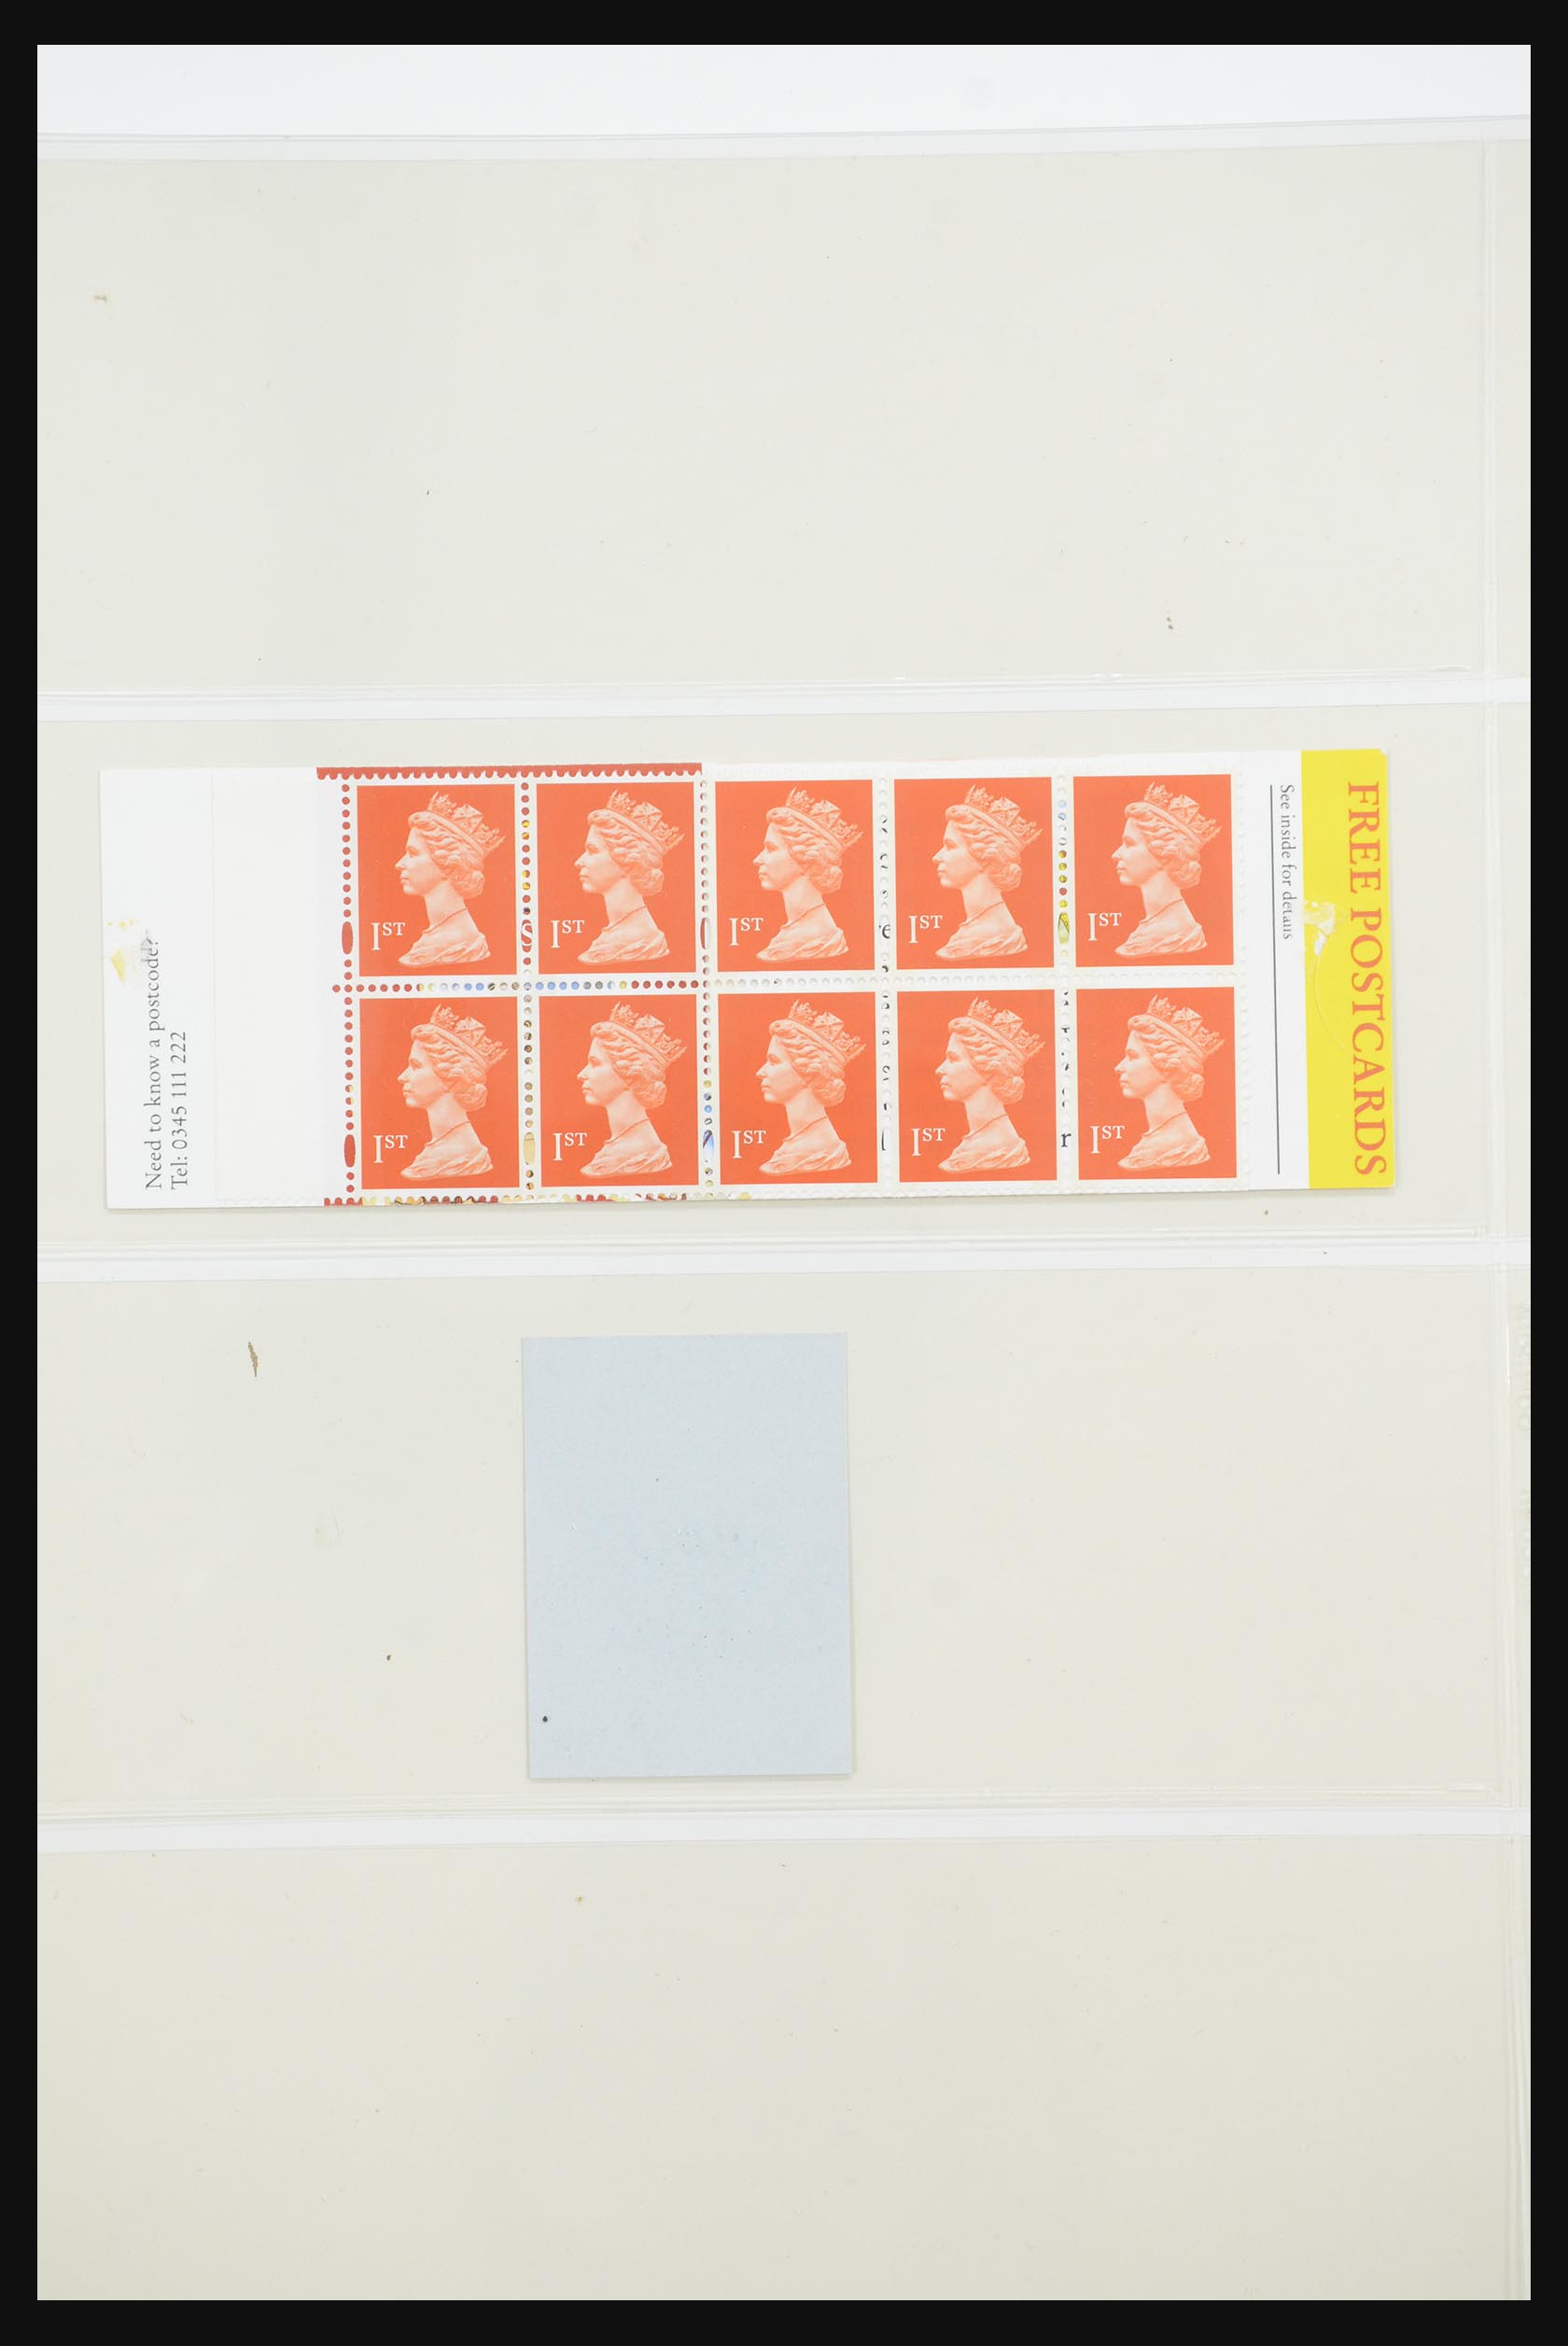 31960 122 - 31960 Engeland postzegelboekjes 1989-2000.